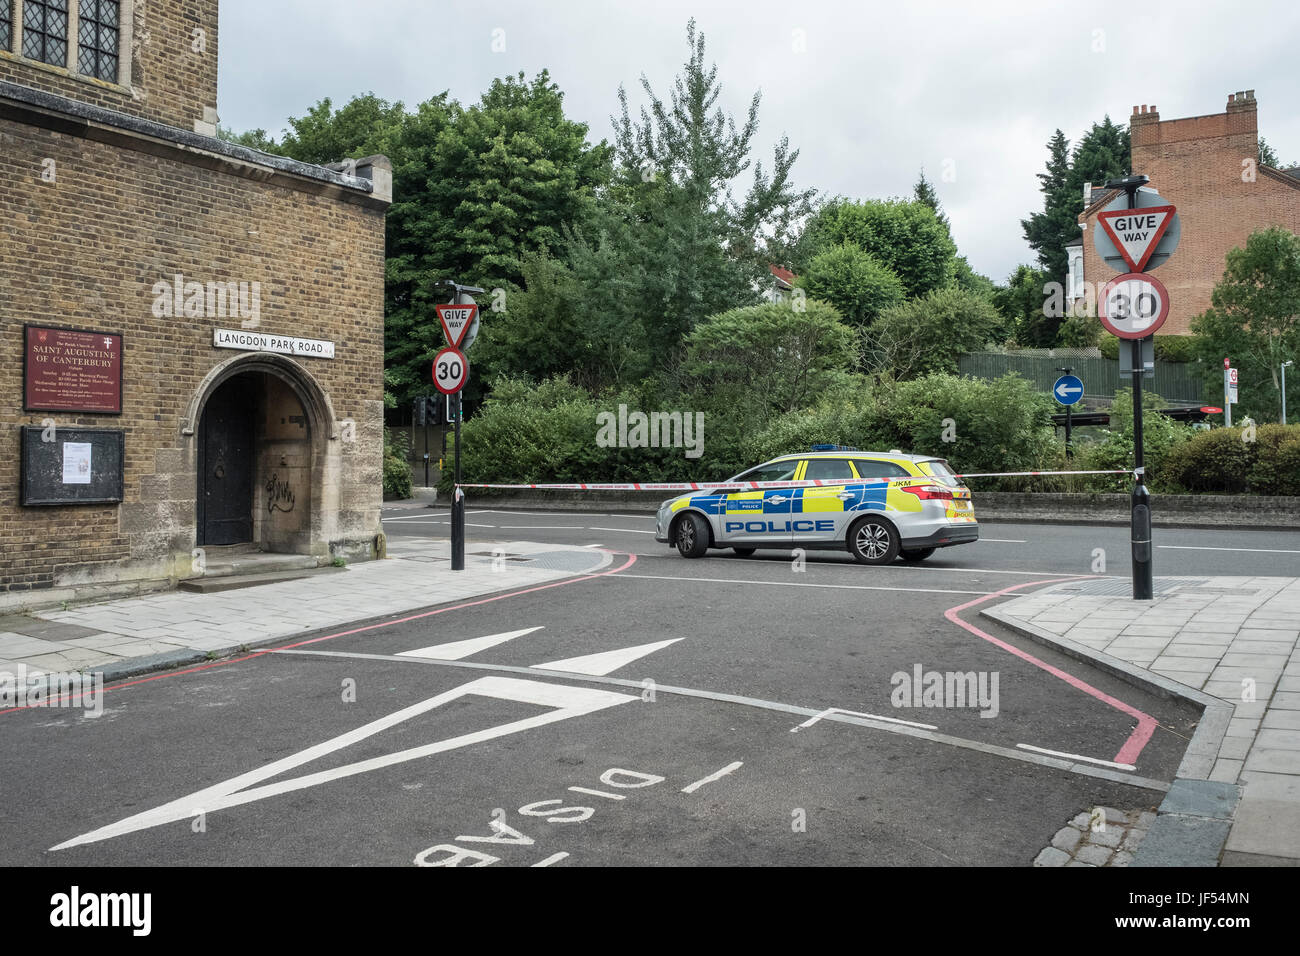 Archway Road, au nord de Londres, le 29 juin 2017. La circulation a été fermée dans les deux directions tôt jeudi soir, alors que les services d'urgence a répondu à une blessure grave. La cause est actuellement inconnue. Crédit : Thomas Carver/Alamy Live News Banque D'Images